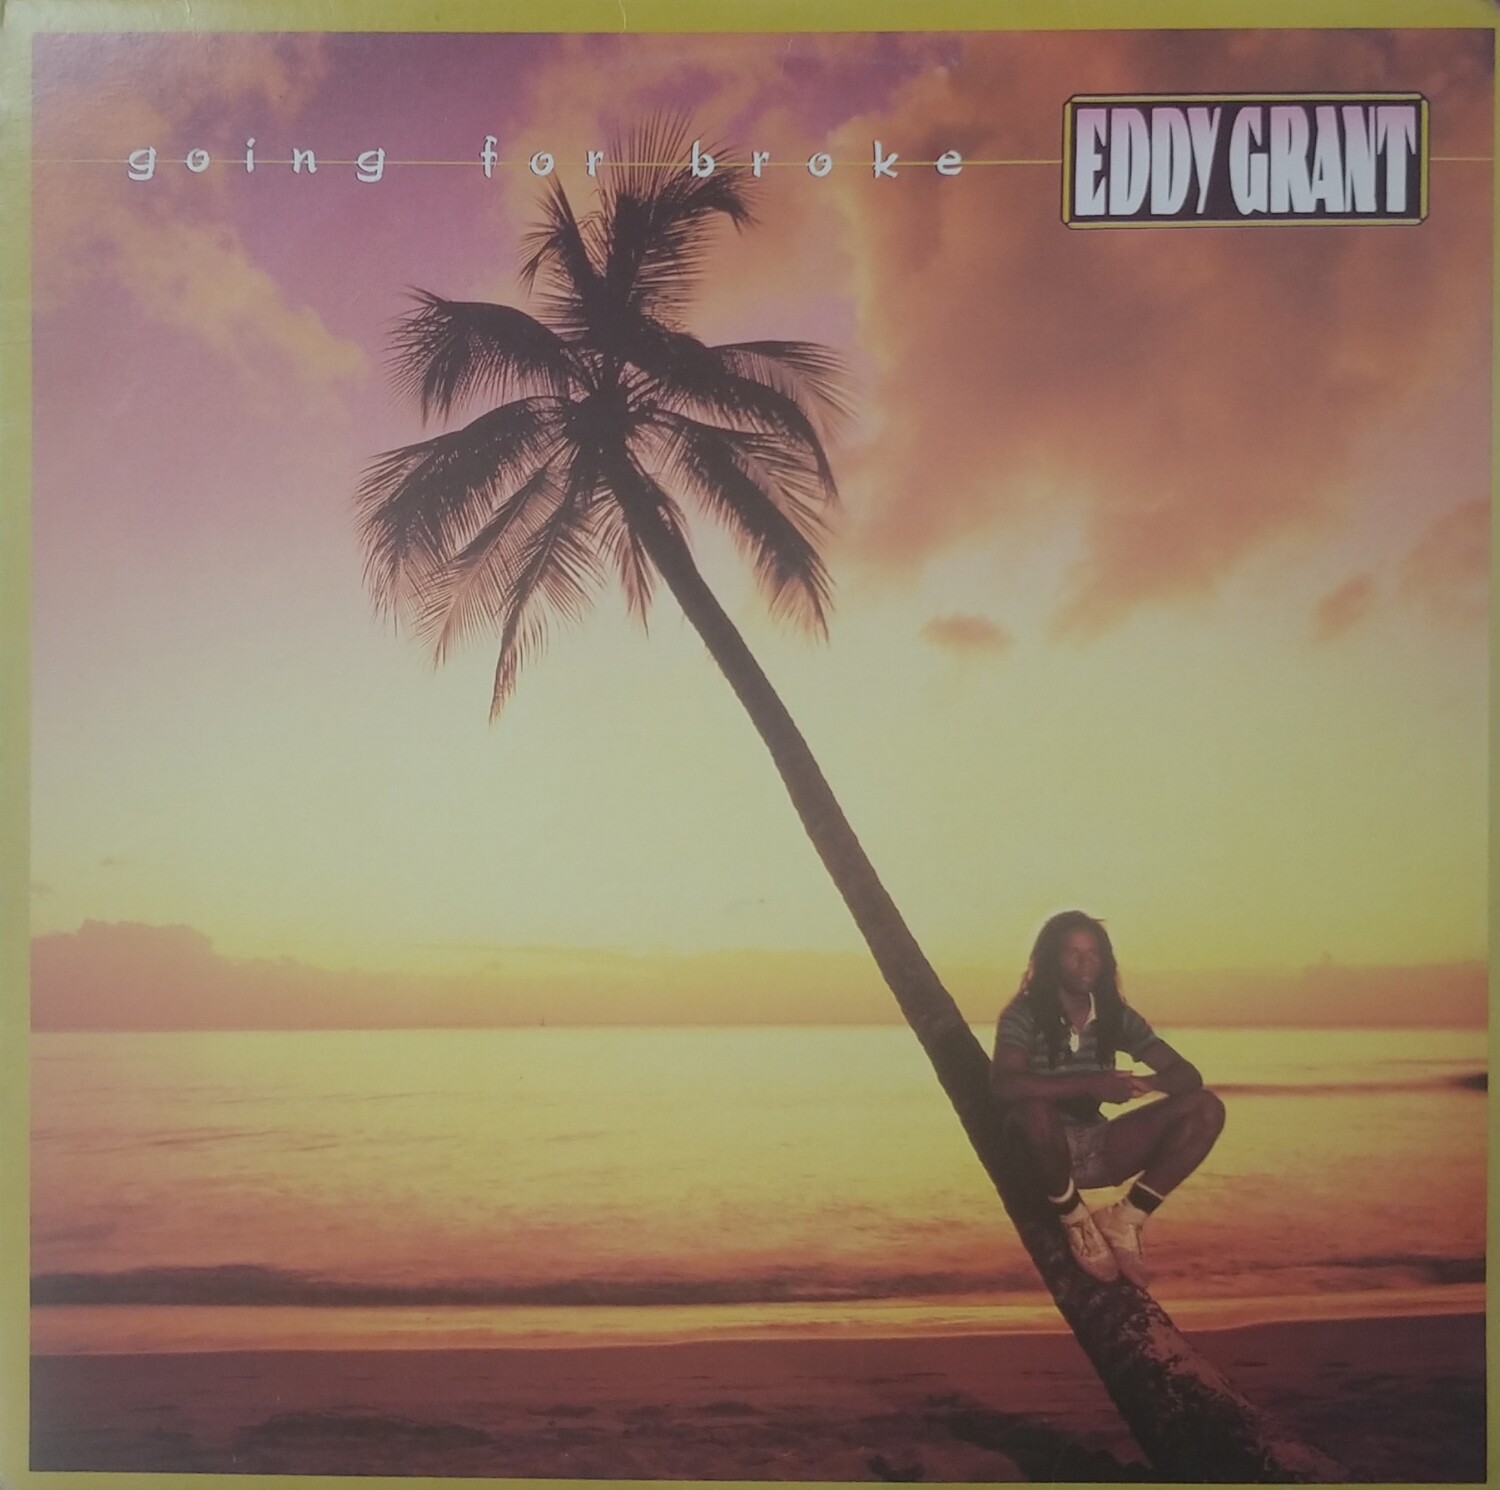 Eddy Grant - Going for broke